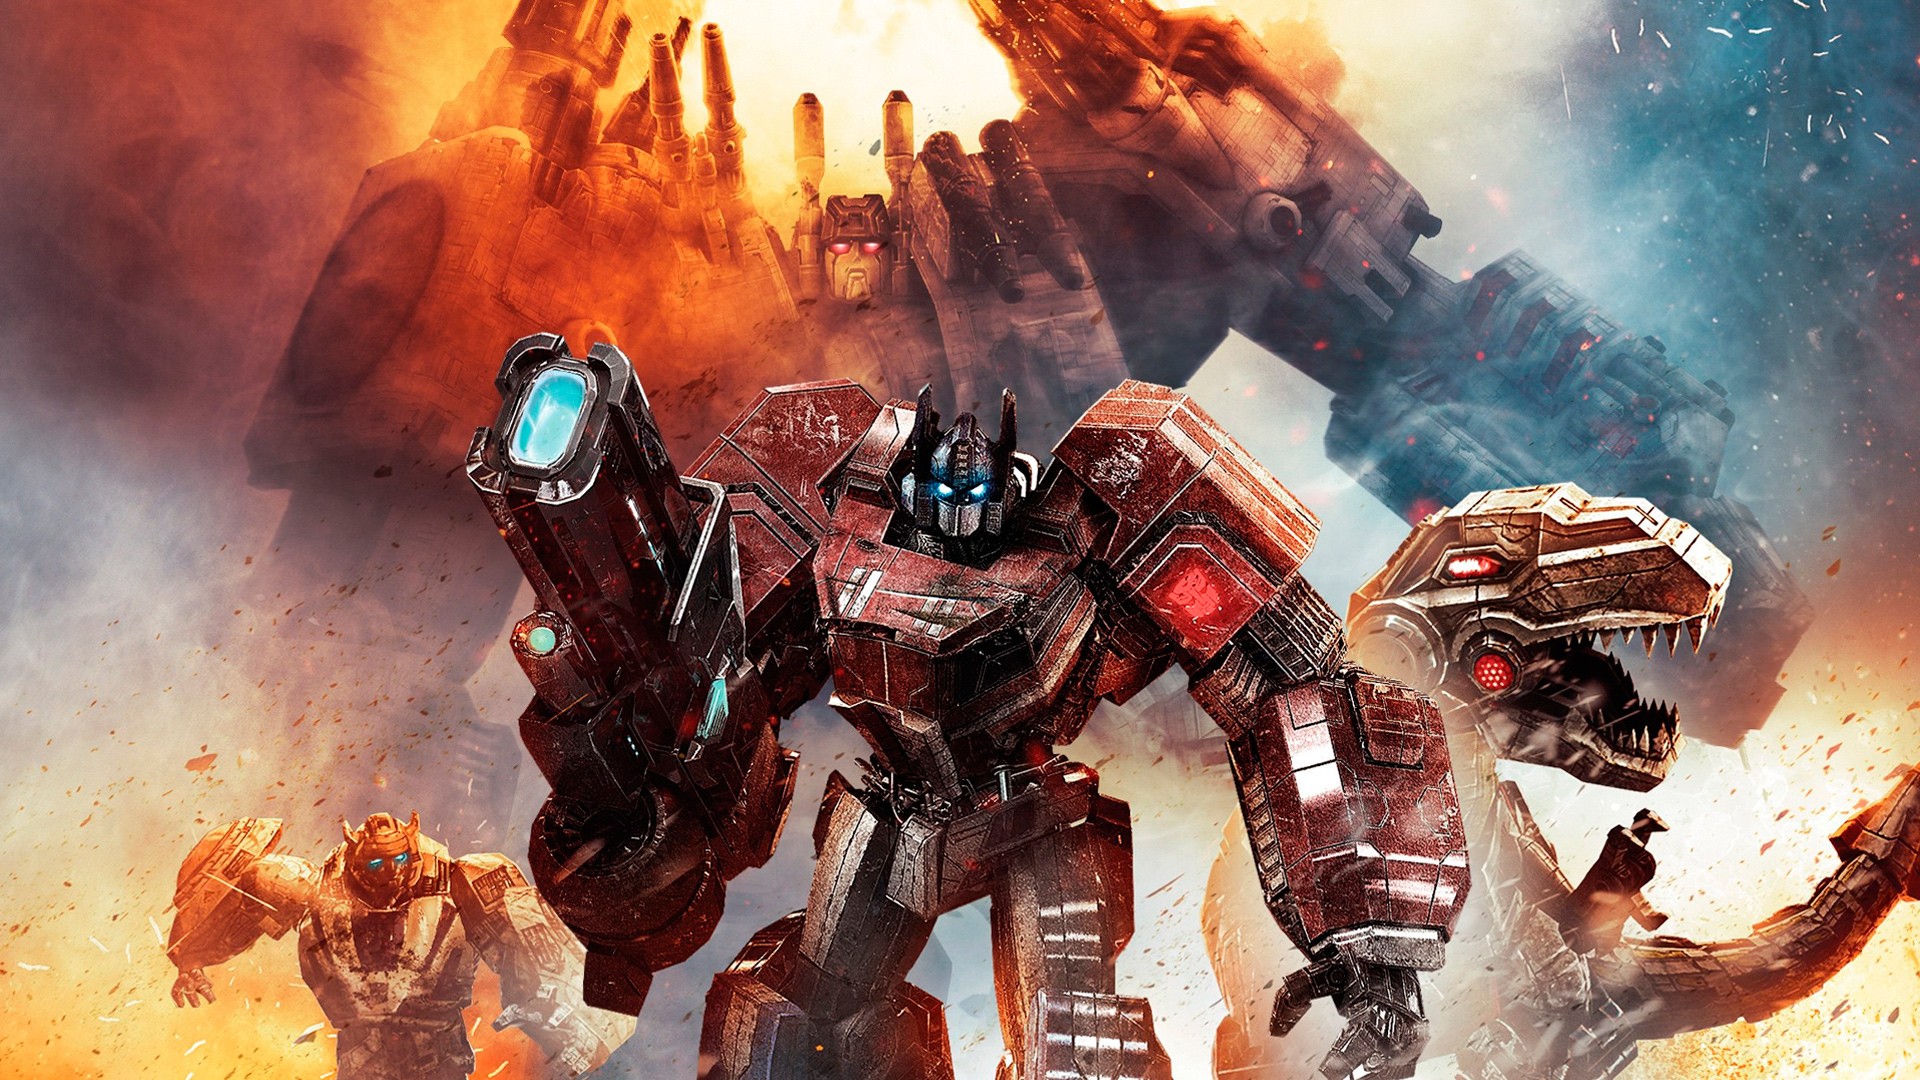 Transformers Optimus Prime Wallpaper Desktop - Ndemok.com